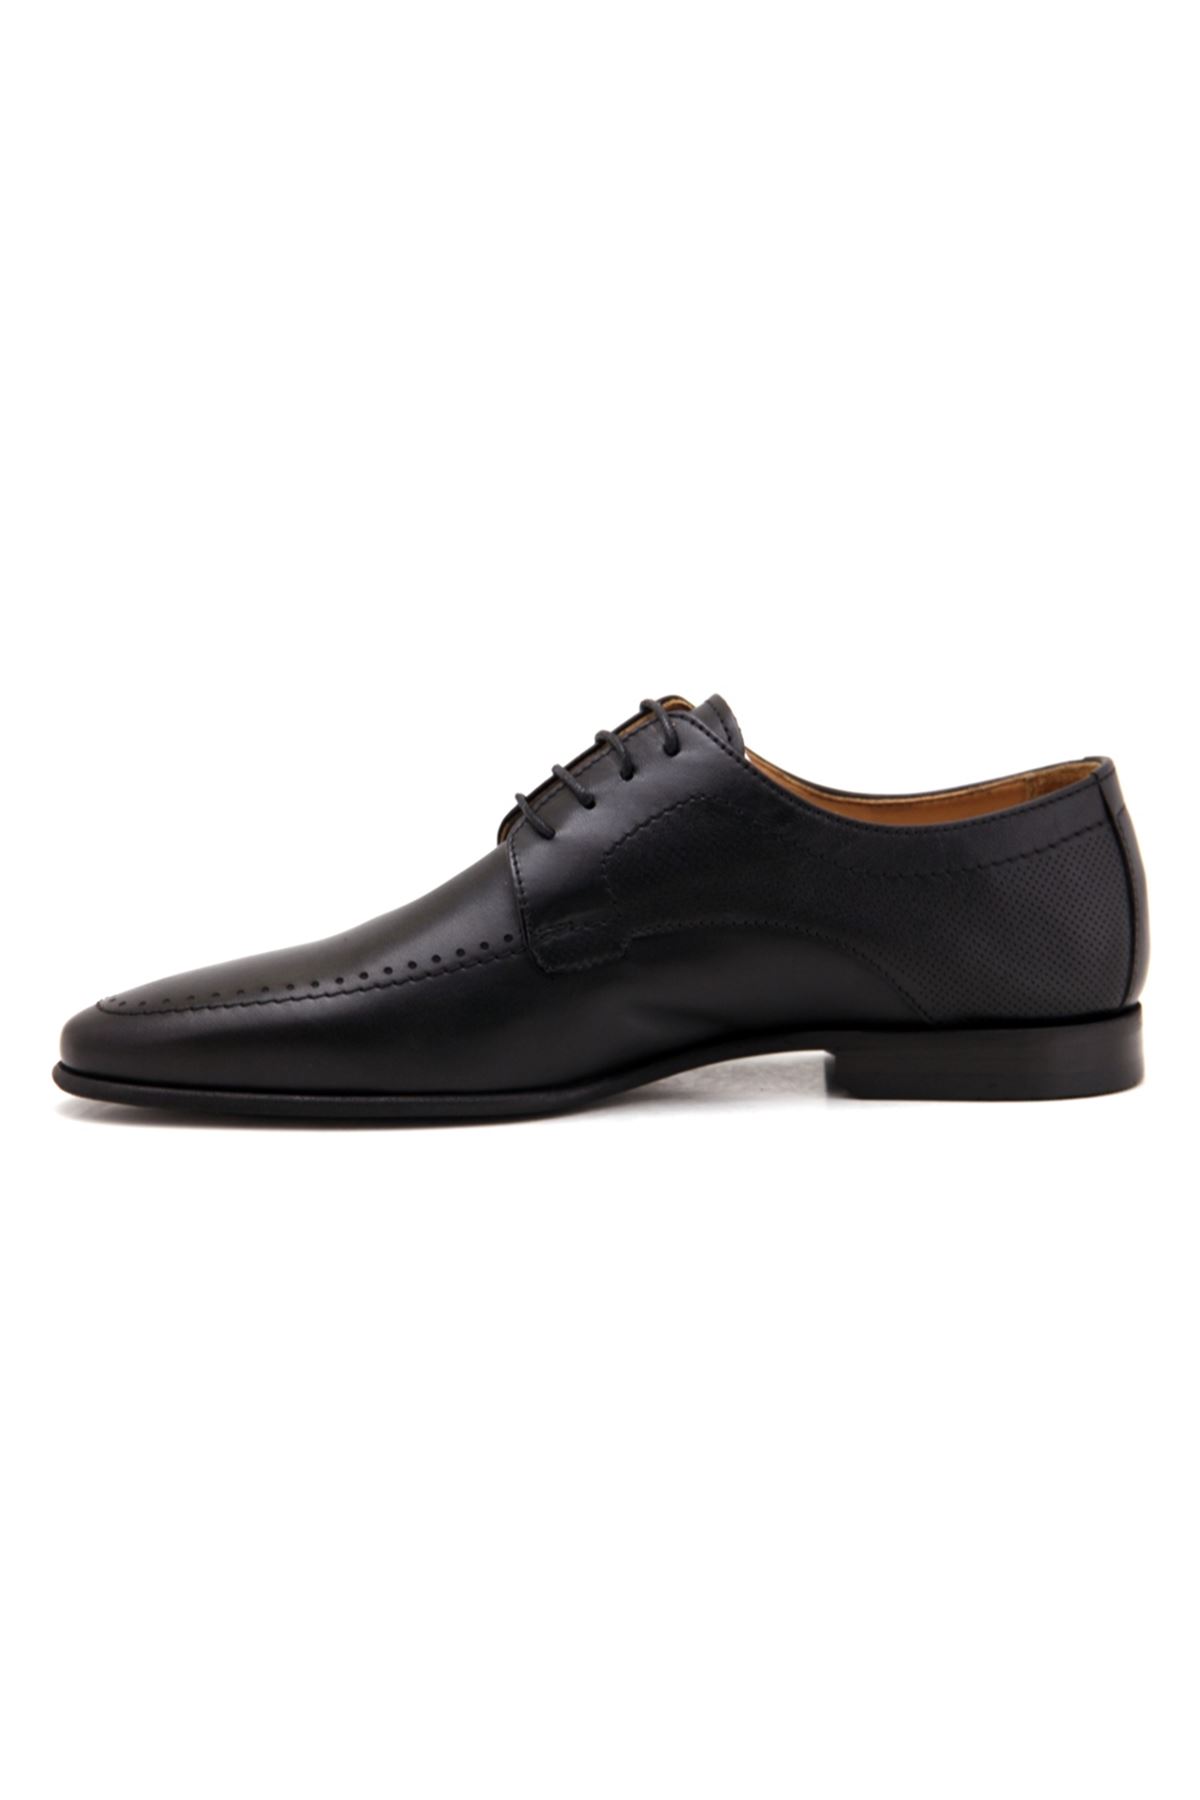 Libero 3431 Deri Klasik Erkek Ayakkabı - Siyah